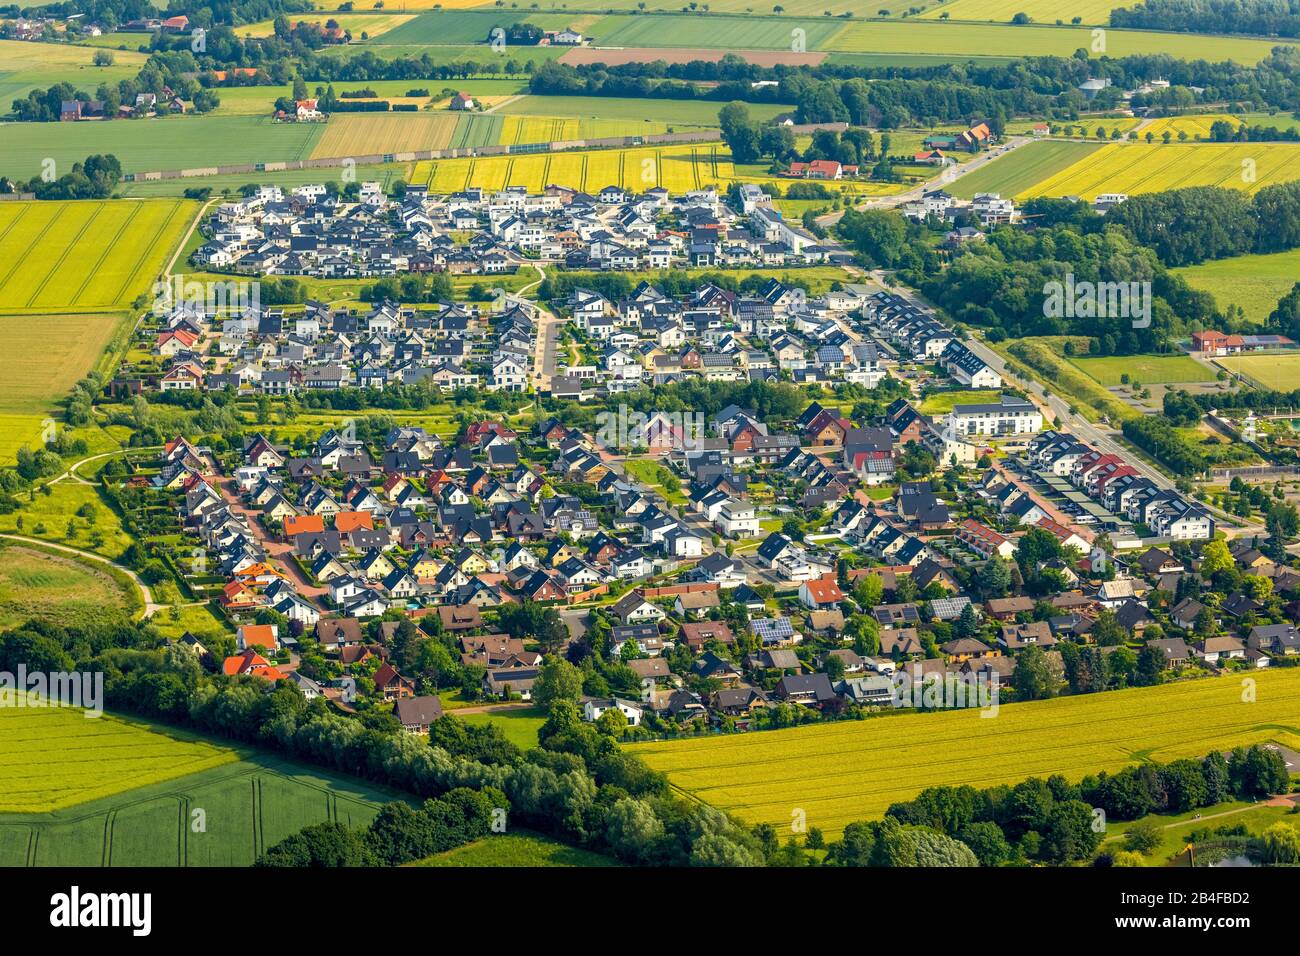 Vue aérienne des nouvelles zones de développement de l'Ardeyweg à Soest dans le Soester Börde, dans l'état fédéral de Rhénanie-du-Nord-Westphalie en Allemagne, Soester Börde, Europe, Banque D'Images